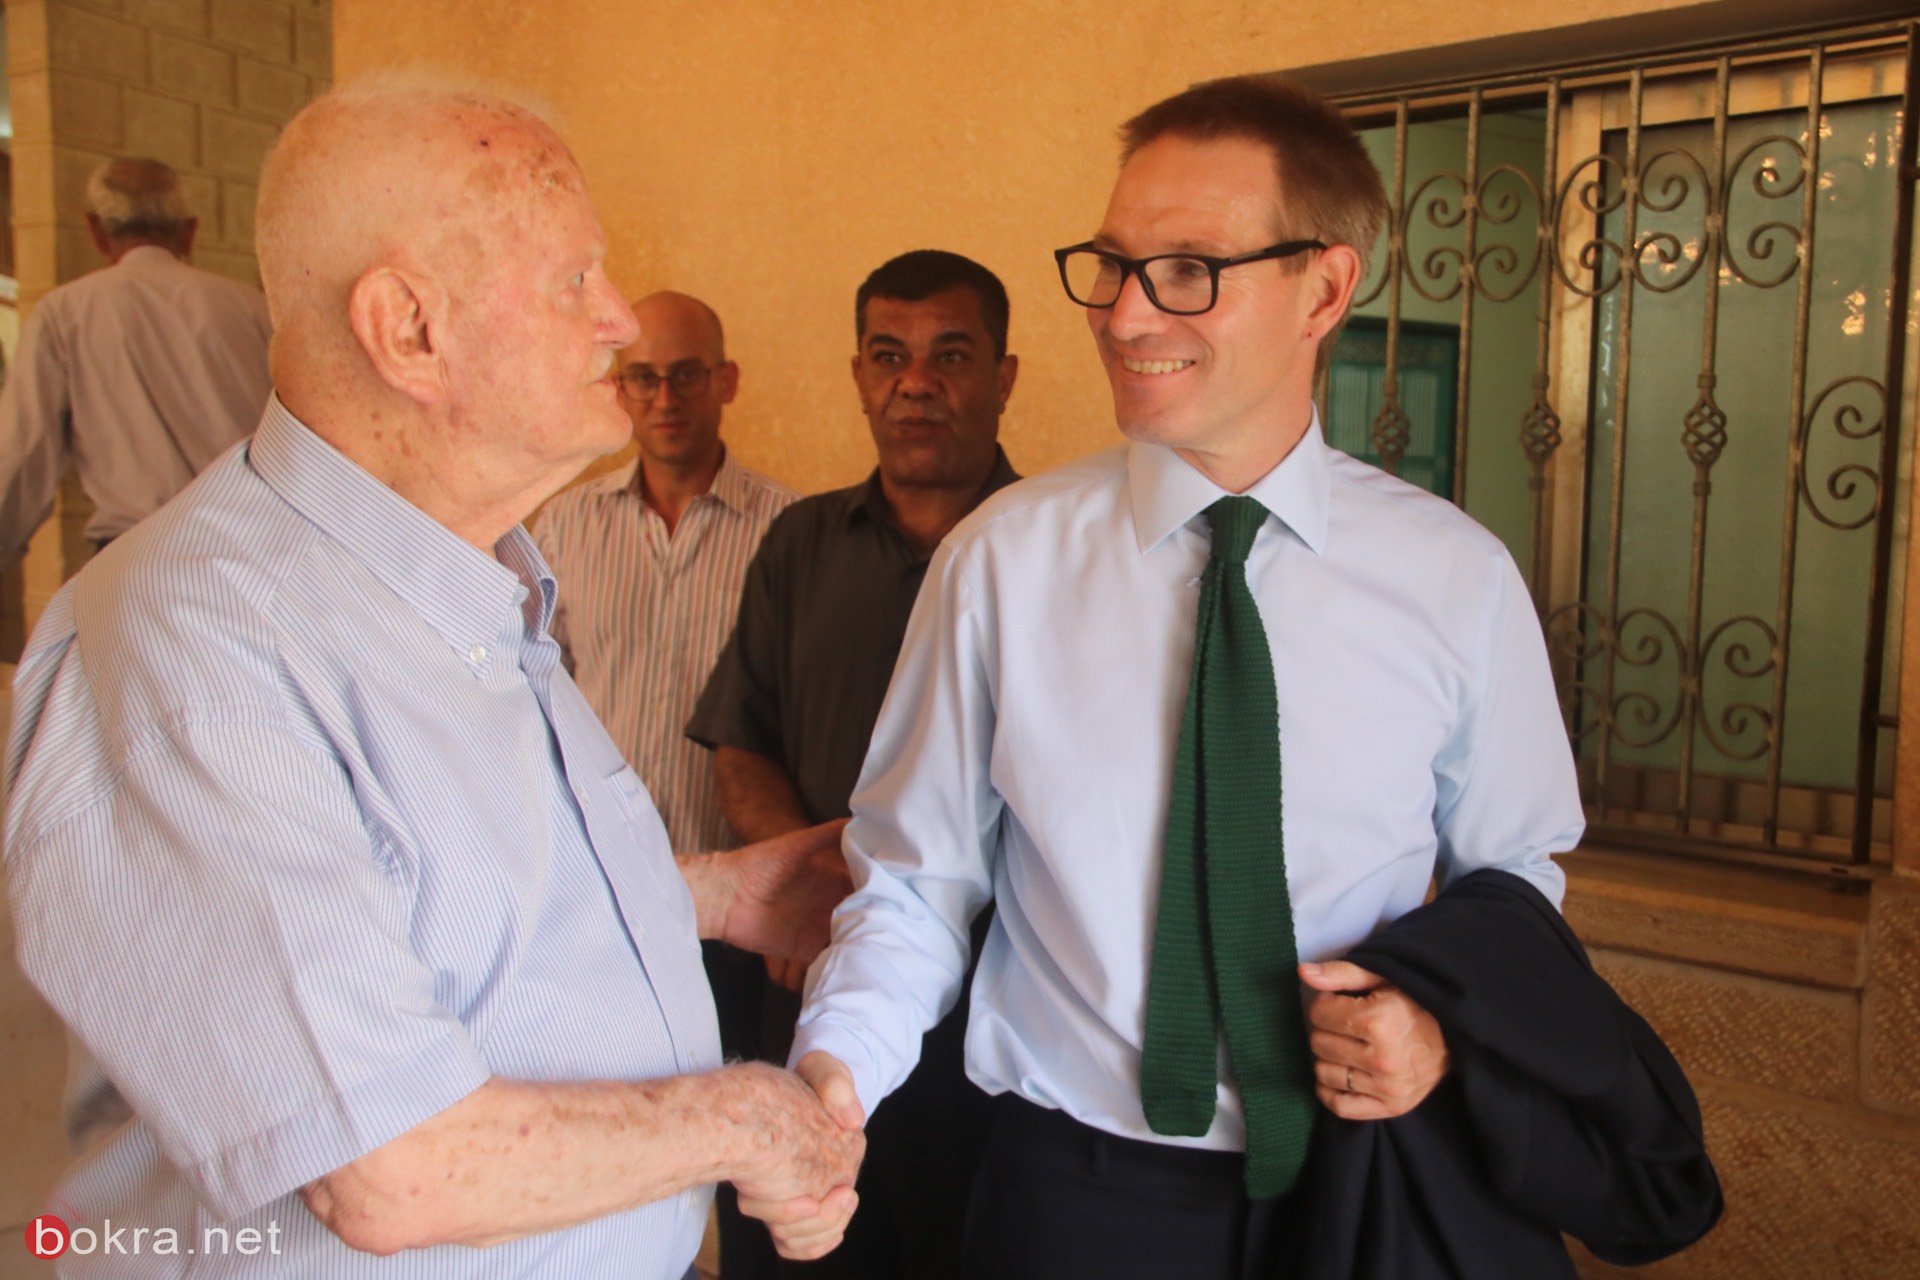 السفير البريطاني الجديد نيل ويچن يزور الناصرة وهذا ما قاله لـ"بُكرا"-7